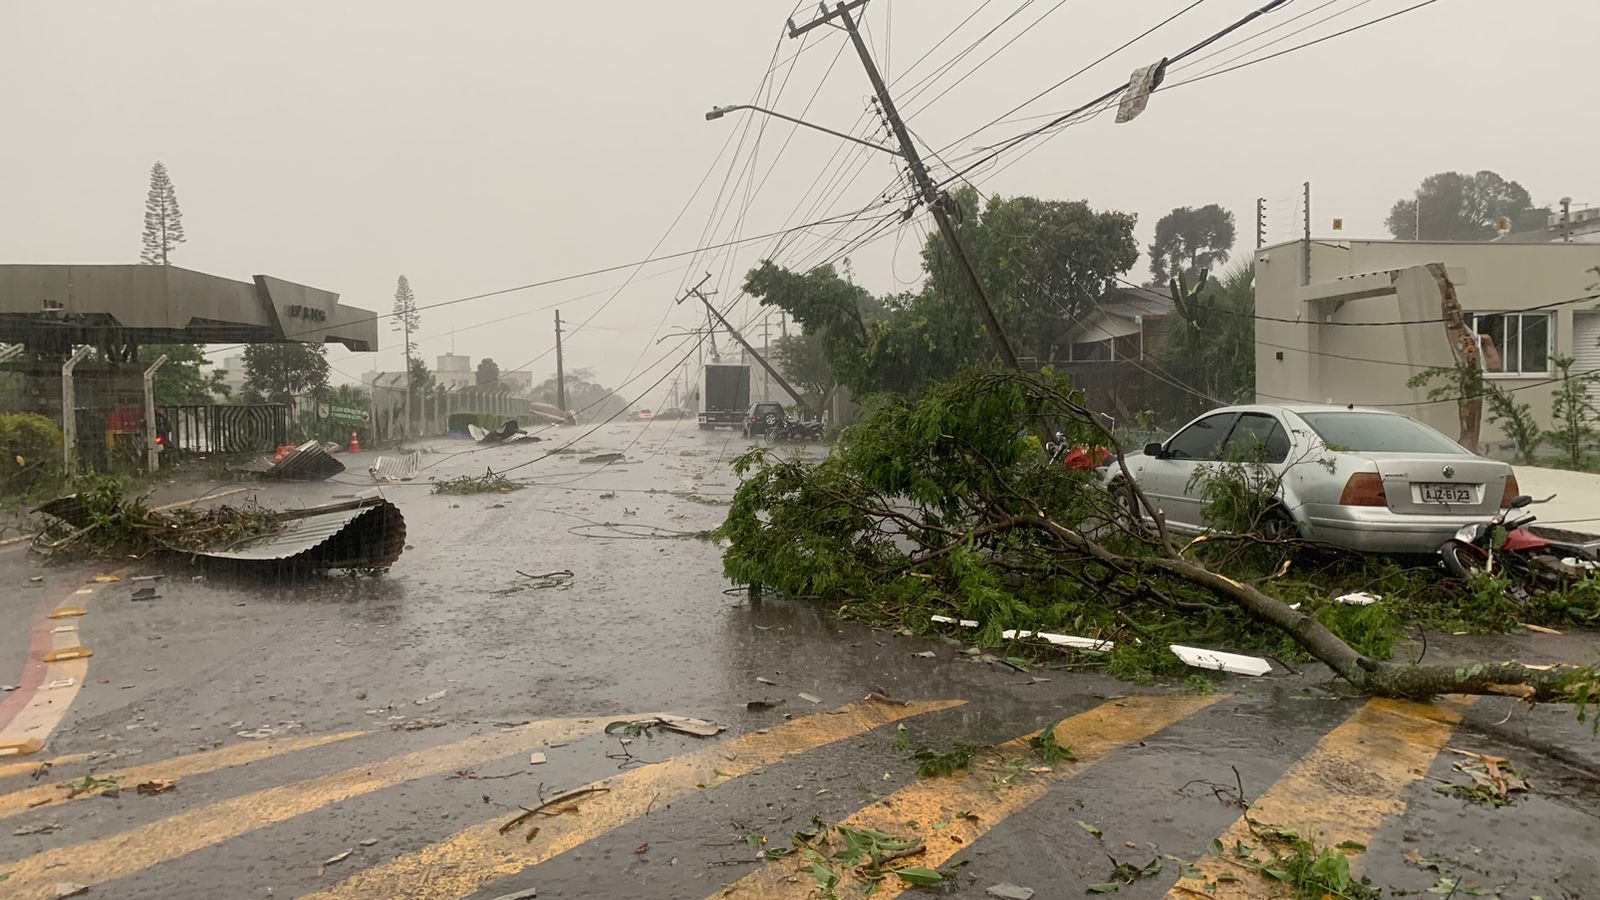 Vendaval teve característica de tornado em Cascavel, diz município